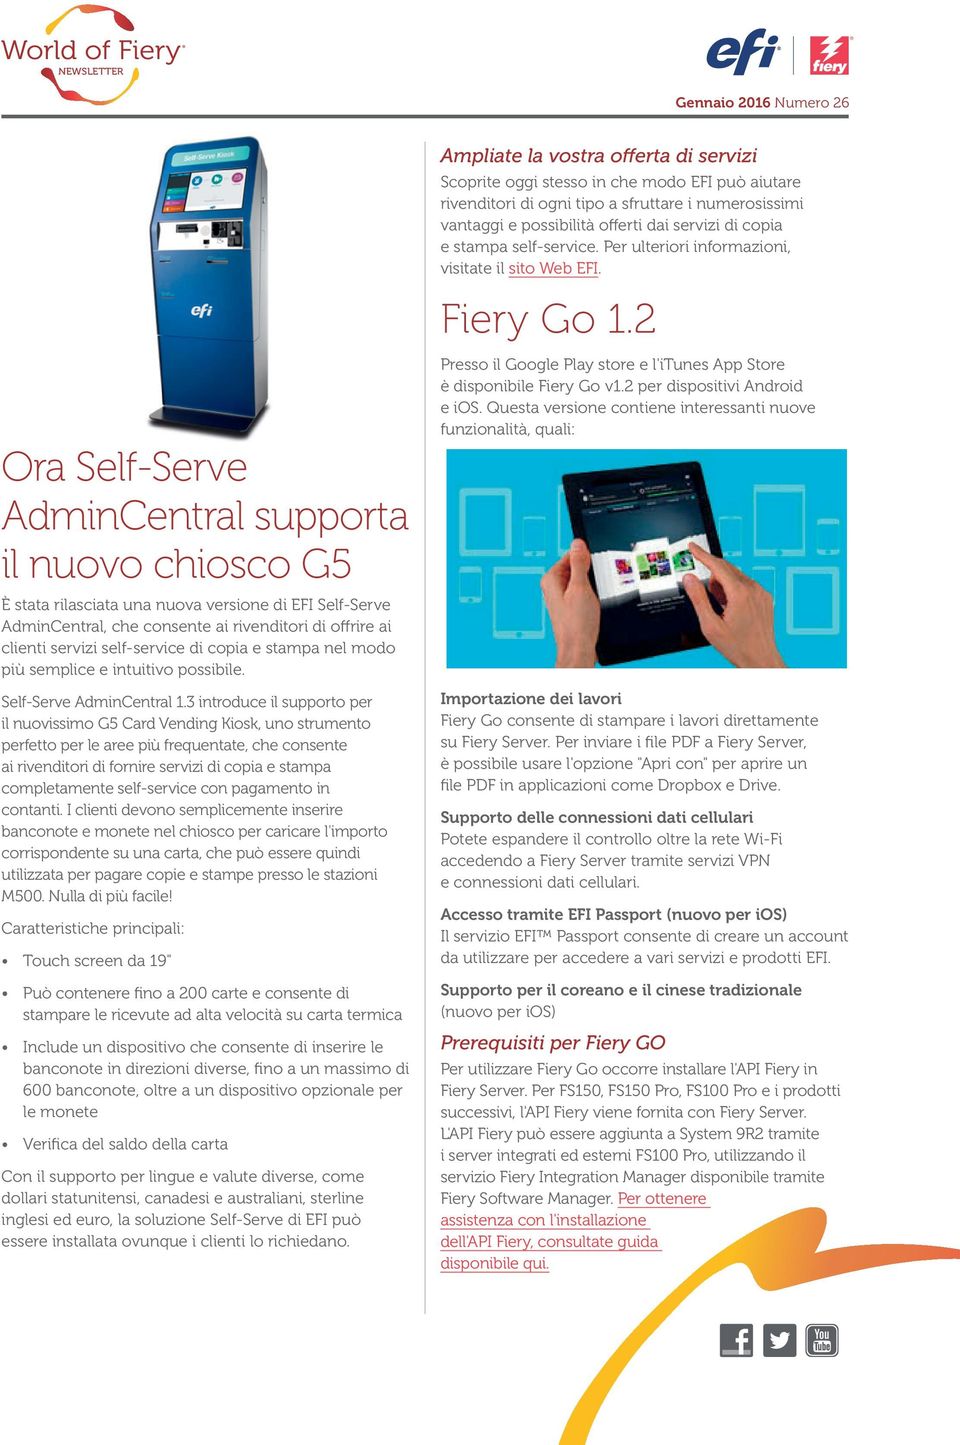 2 Ora Self-Serve AdminCentral supporta il nuovo chiosco G5 È stata rilasciata una nuova versione di EFI Self-Serve AdminCentral, che consente ai rivenditori di offrire ai clienti servizi self-service